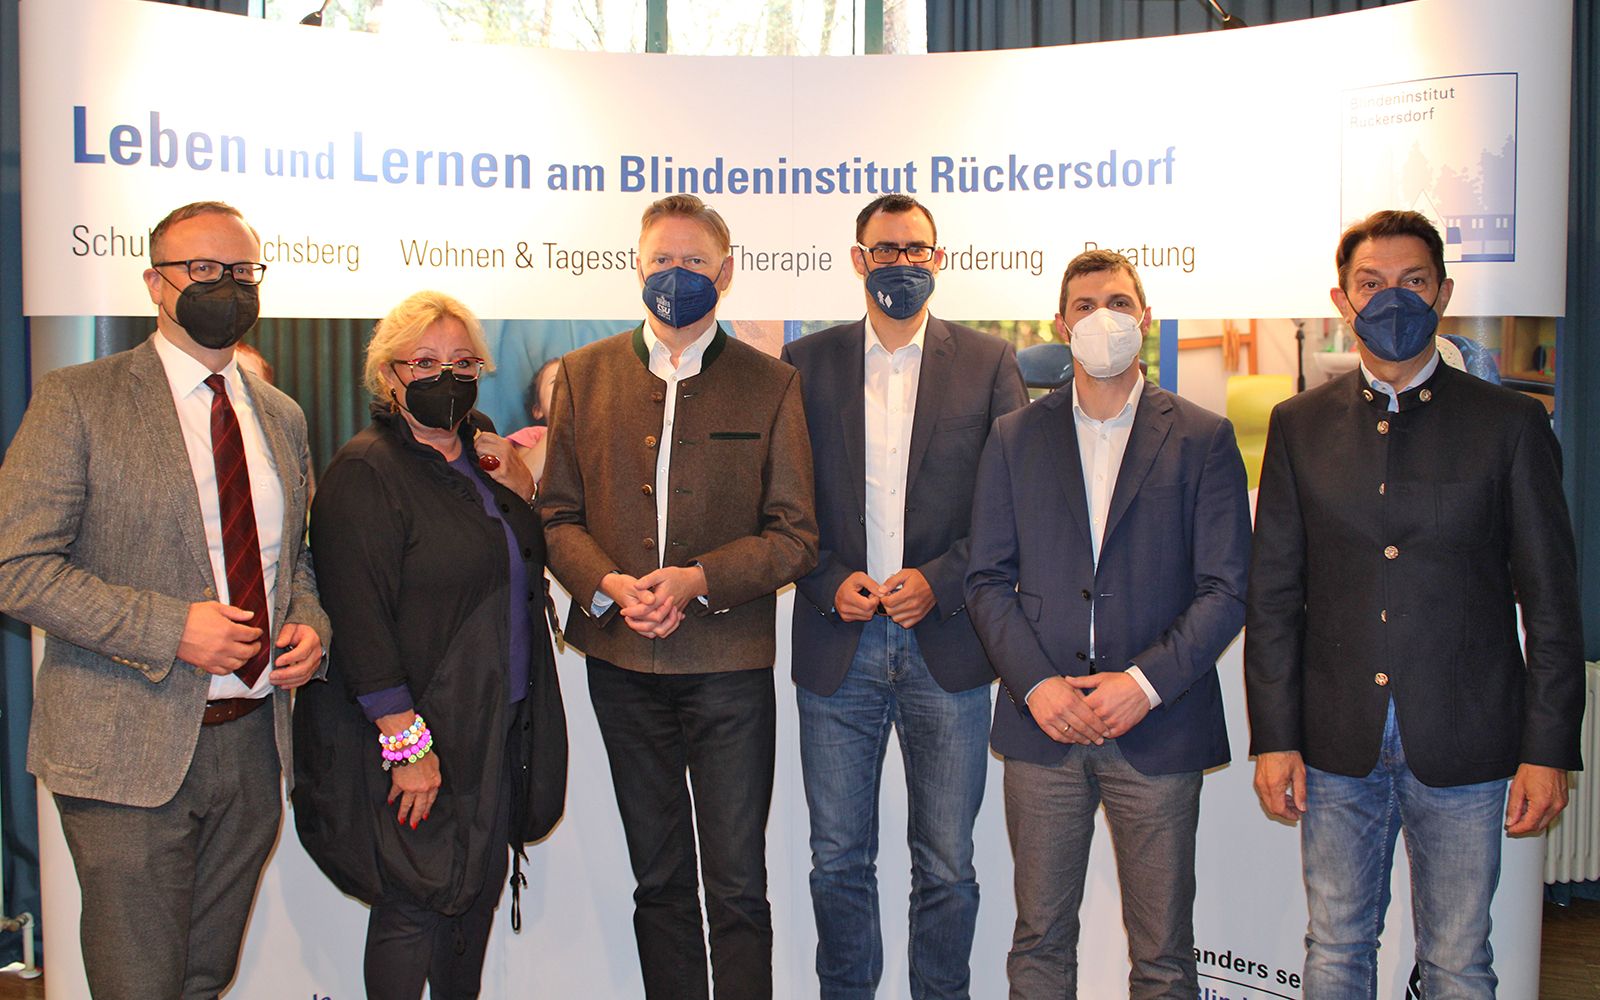 Politiker mit Institutsmitgliedern bei ihrem Besuch des Blindeninstituts Rückersdorf. Von links: Dr. Marco Bambach, Ingeborg Thron, Norbert Dünkel, Ralph Edelhäußer, Daniel Boldt, Johannes Ballas 